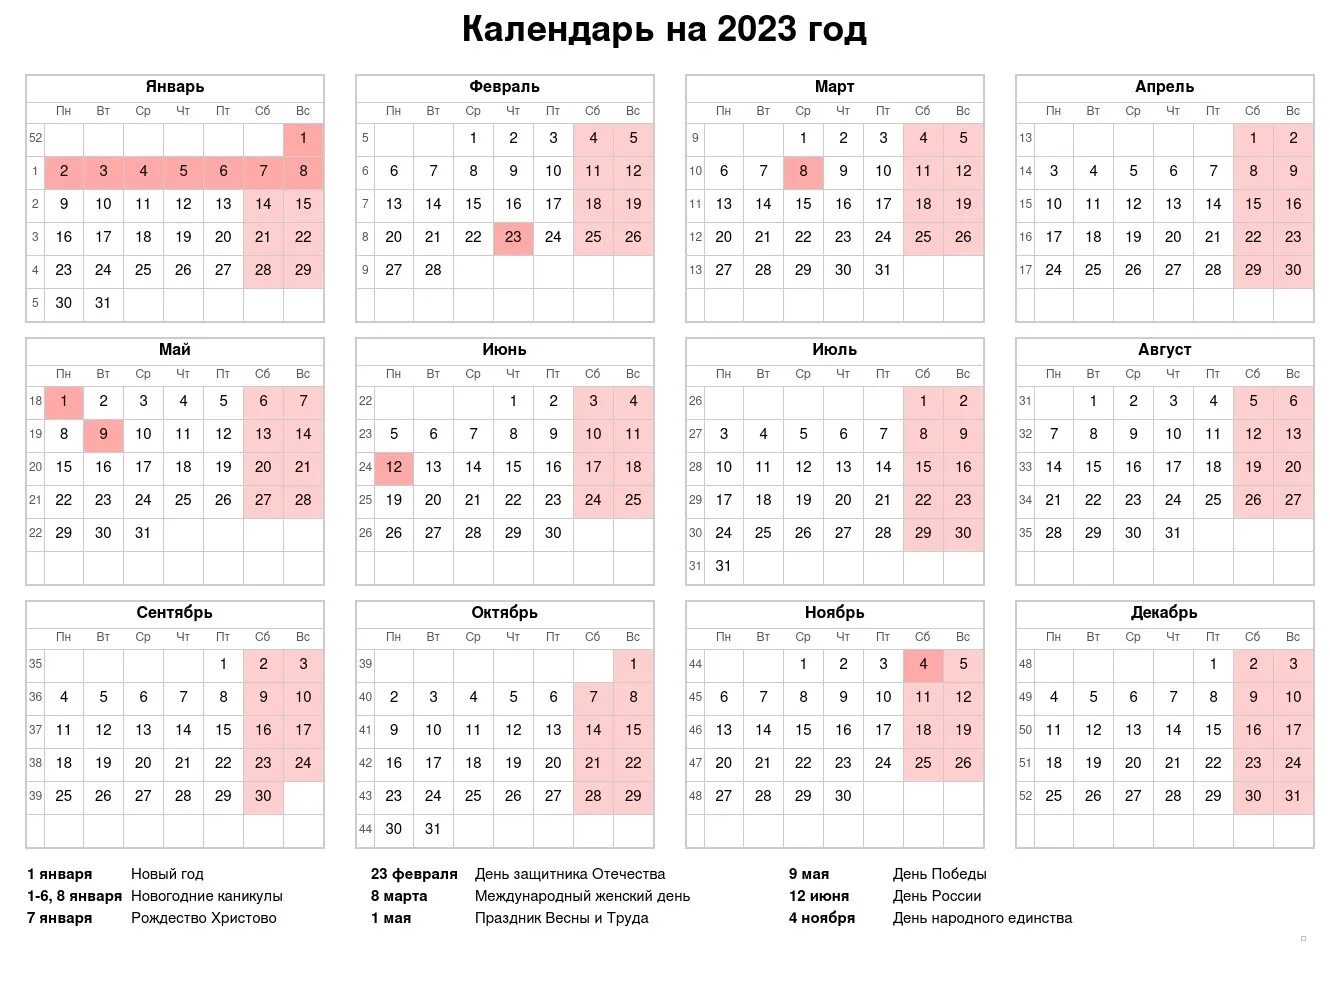 Какие праздники 2022 году. Производственный календарь на 2022 год с праздниками и выходными. Выходные и праздники 2022 года в России нерабочие дни. Календарь выходных и праздничных дней на 2022 год в России. Праздничные и выходные дни в 2022 году в России Министерство труда.